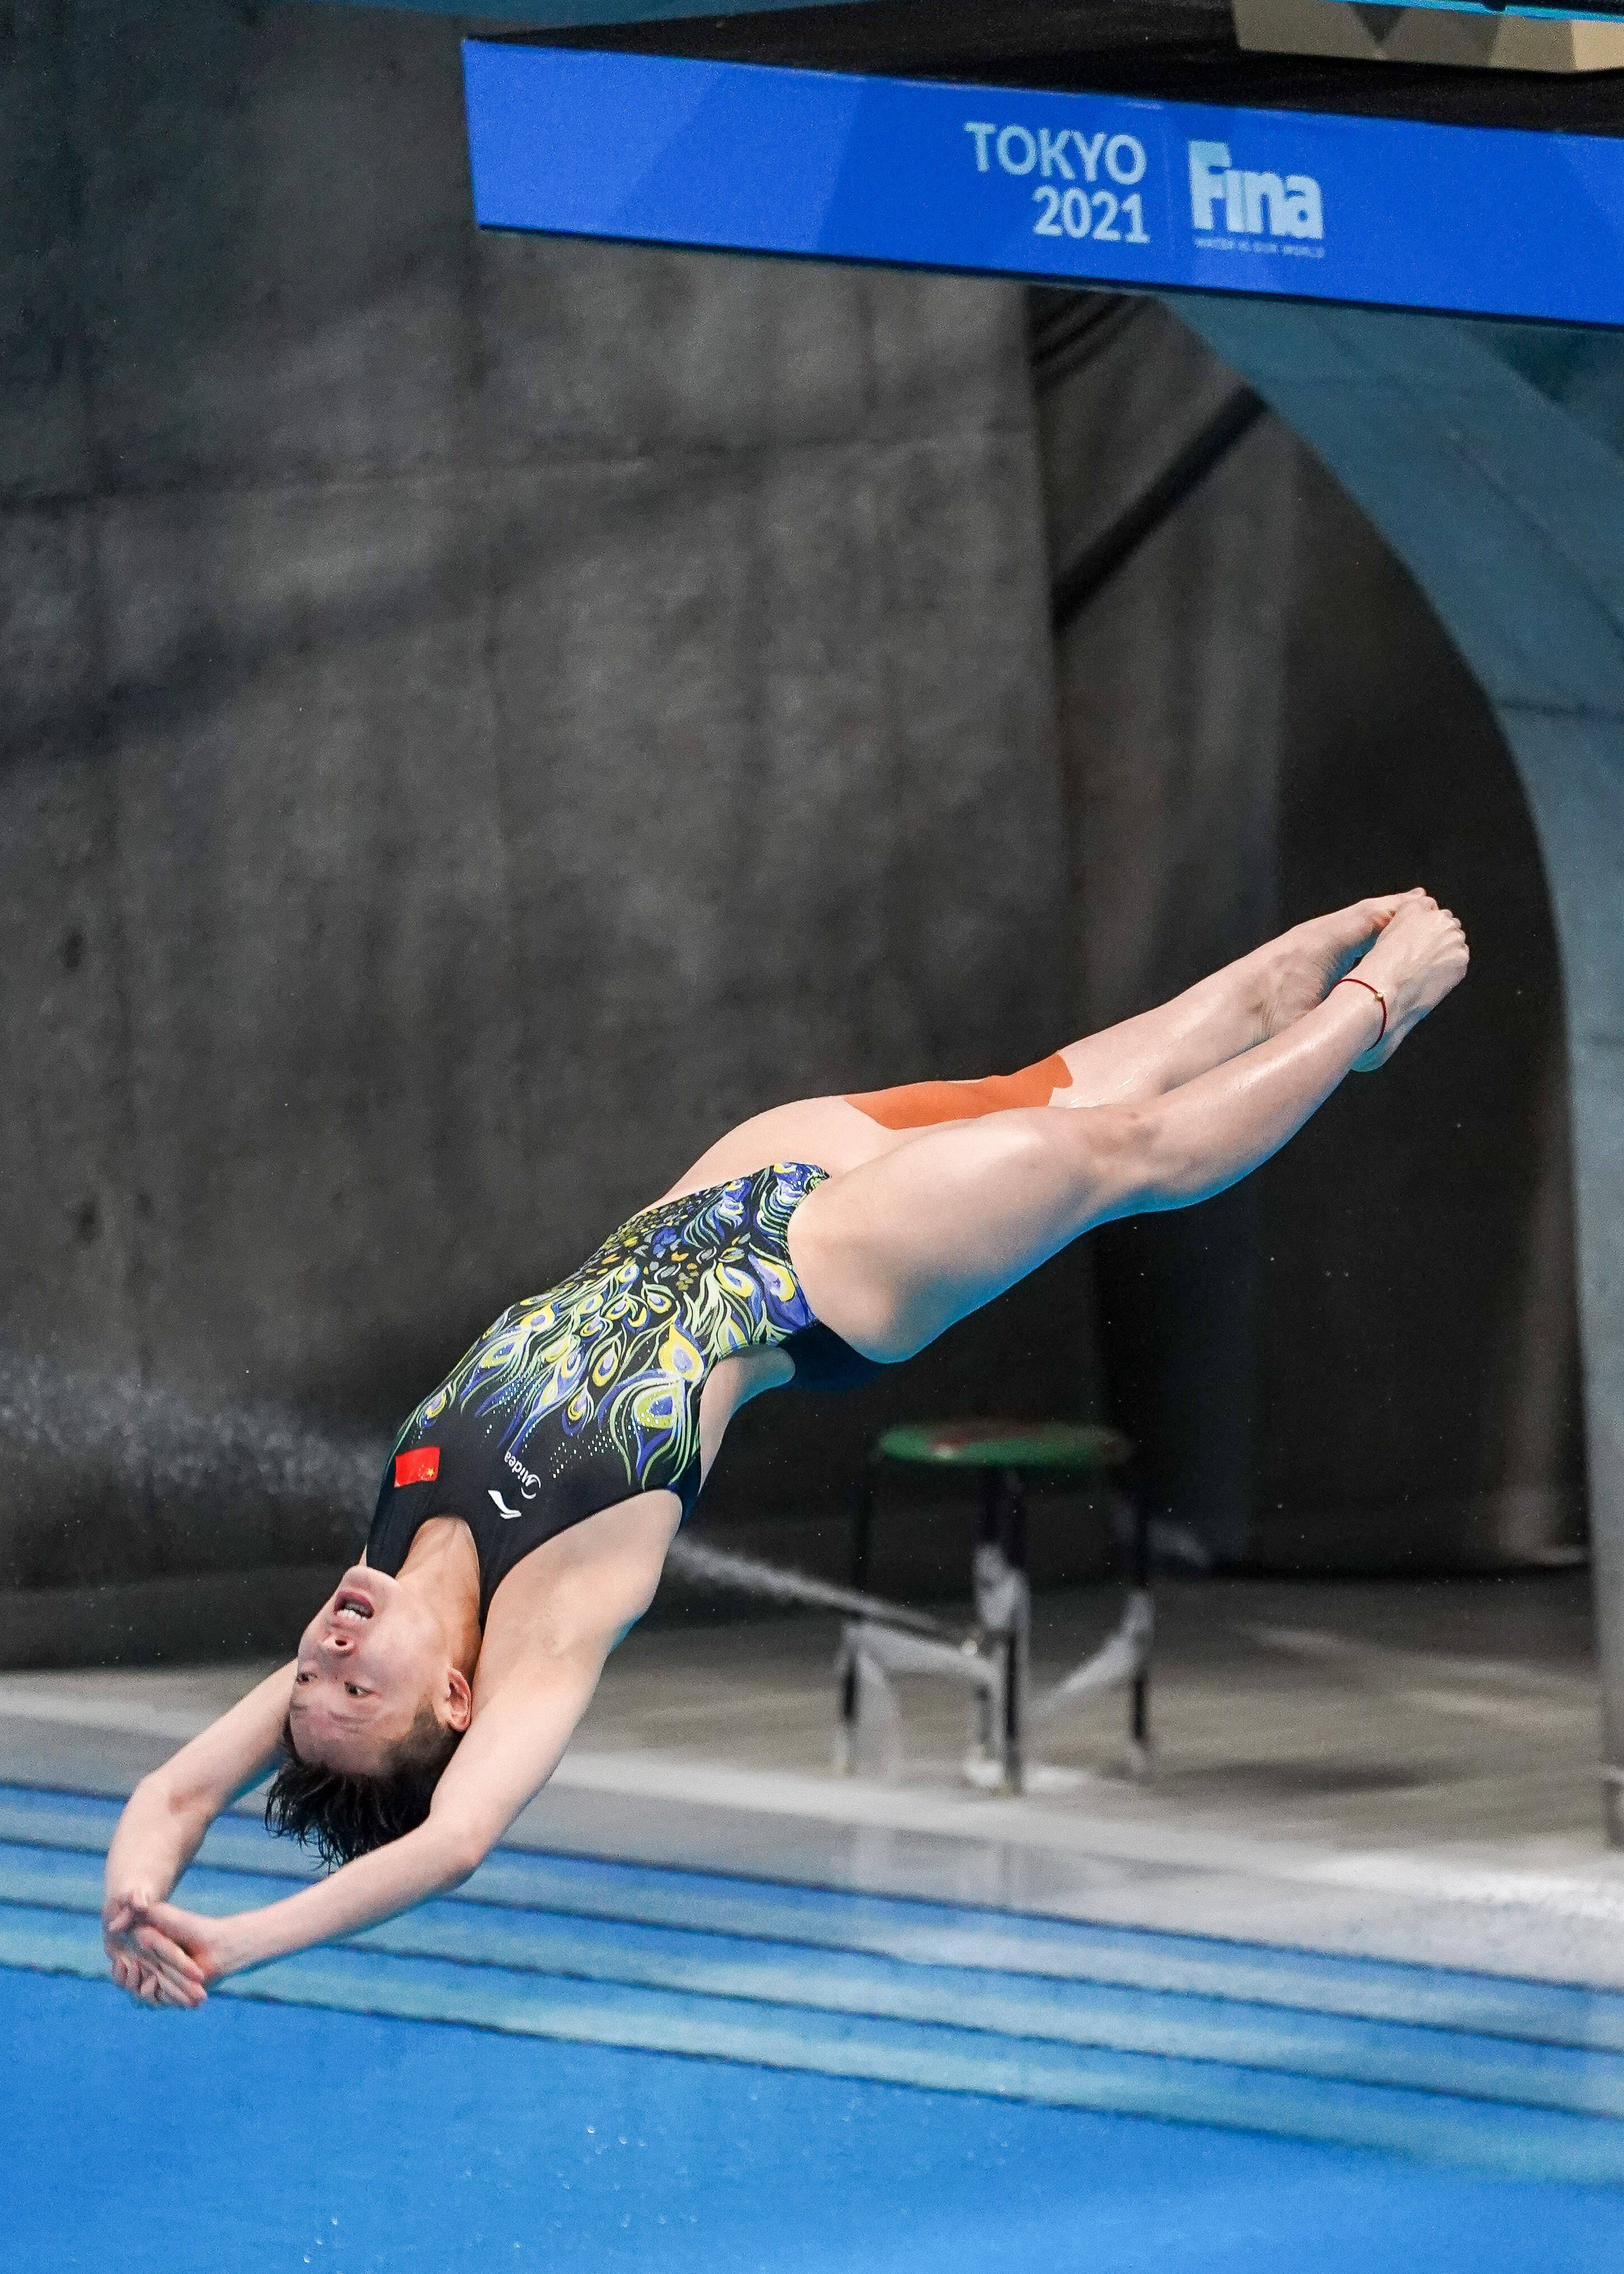 女子跳水运动员图片